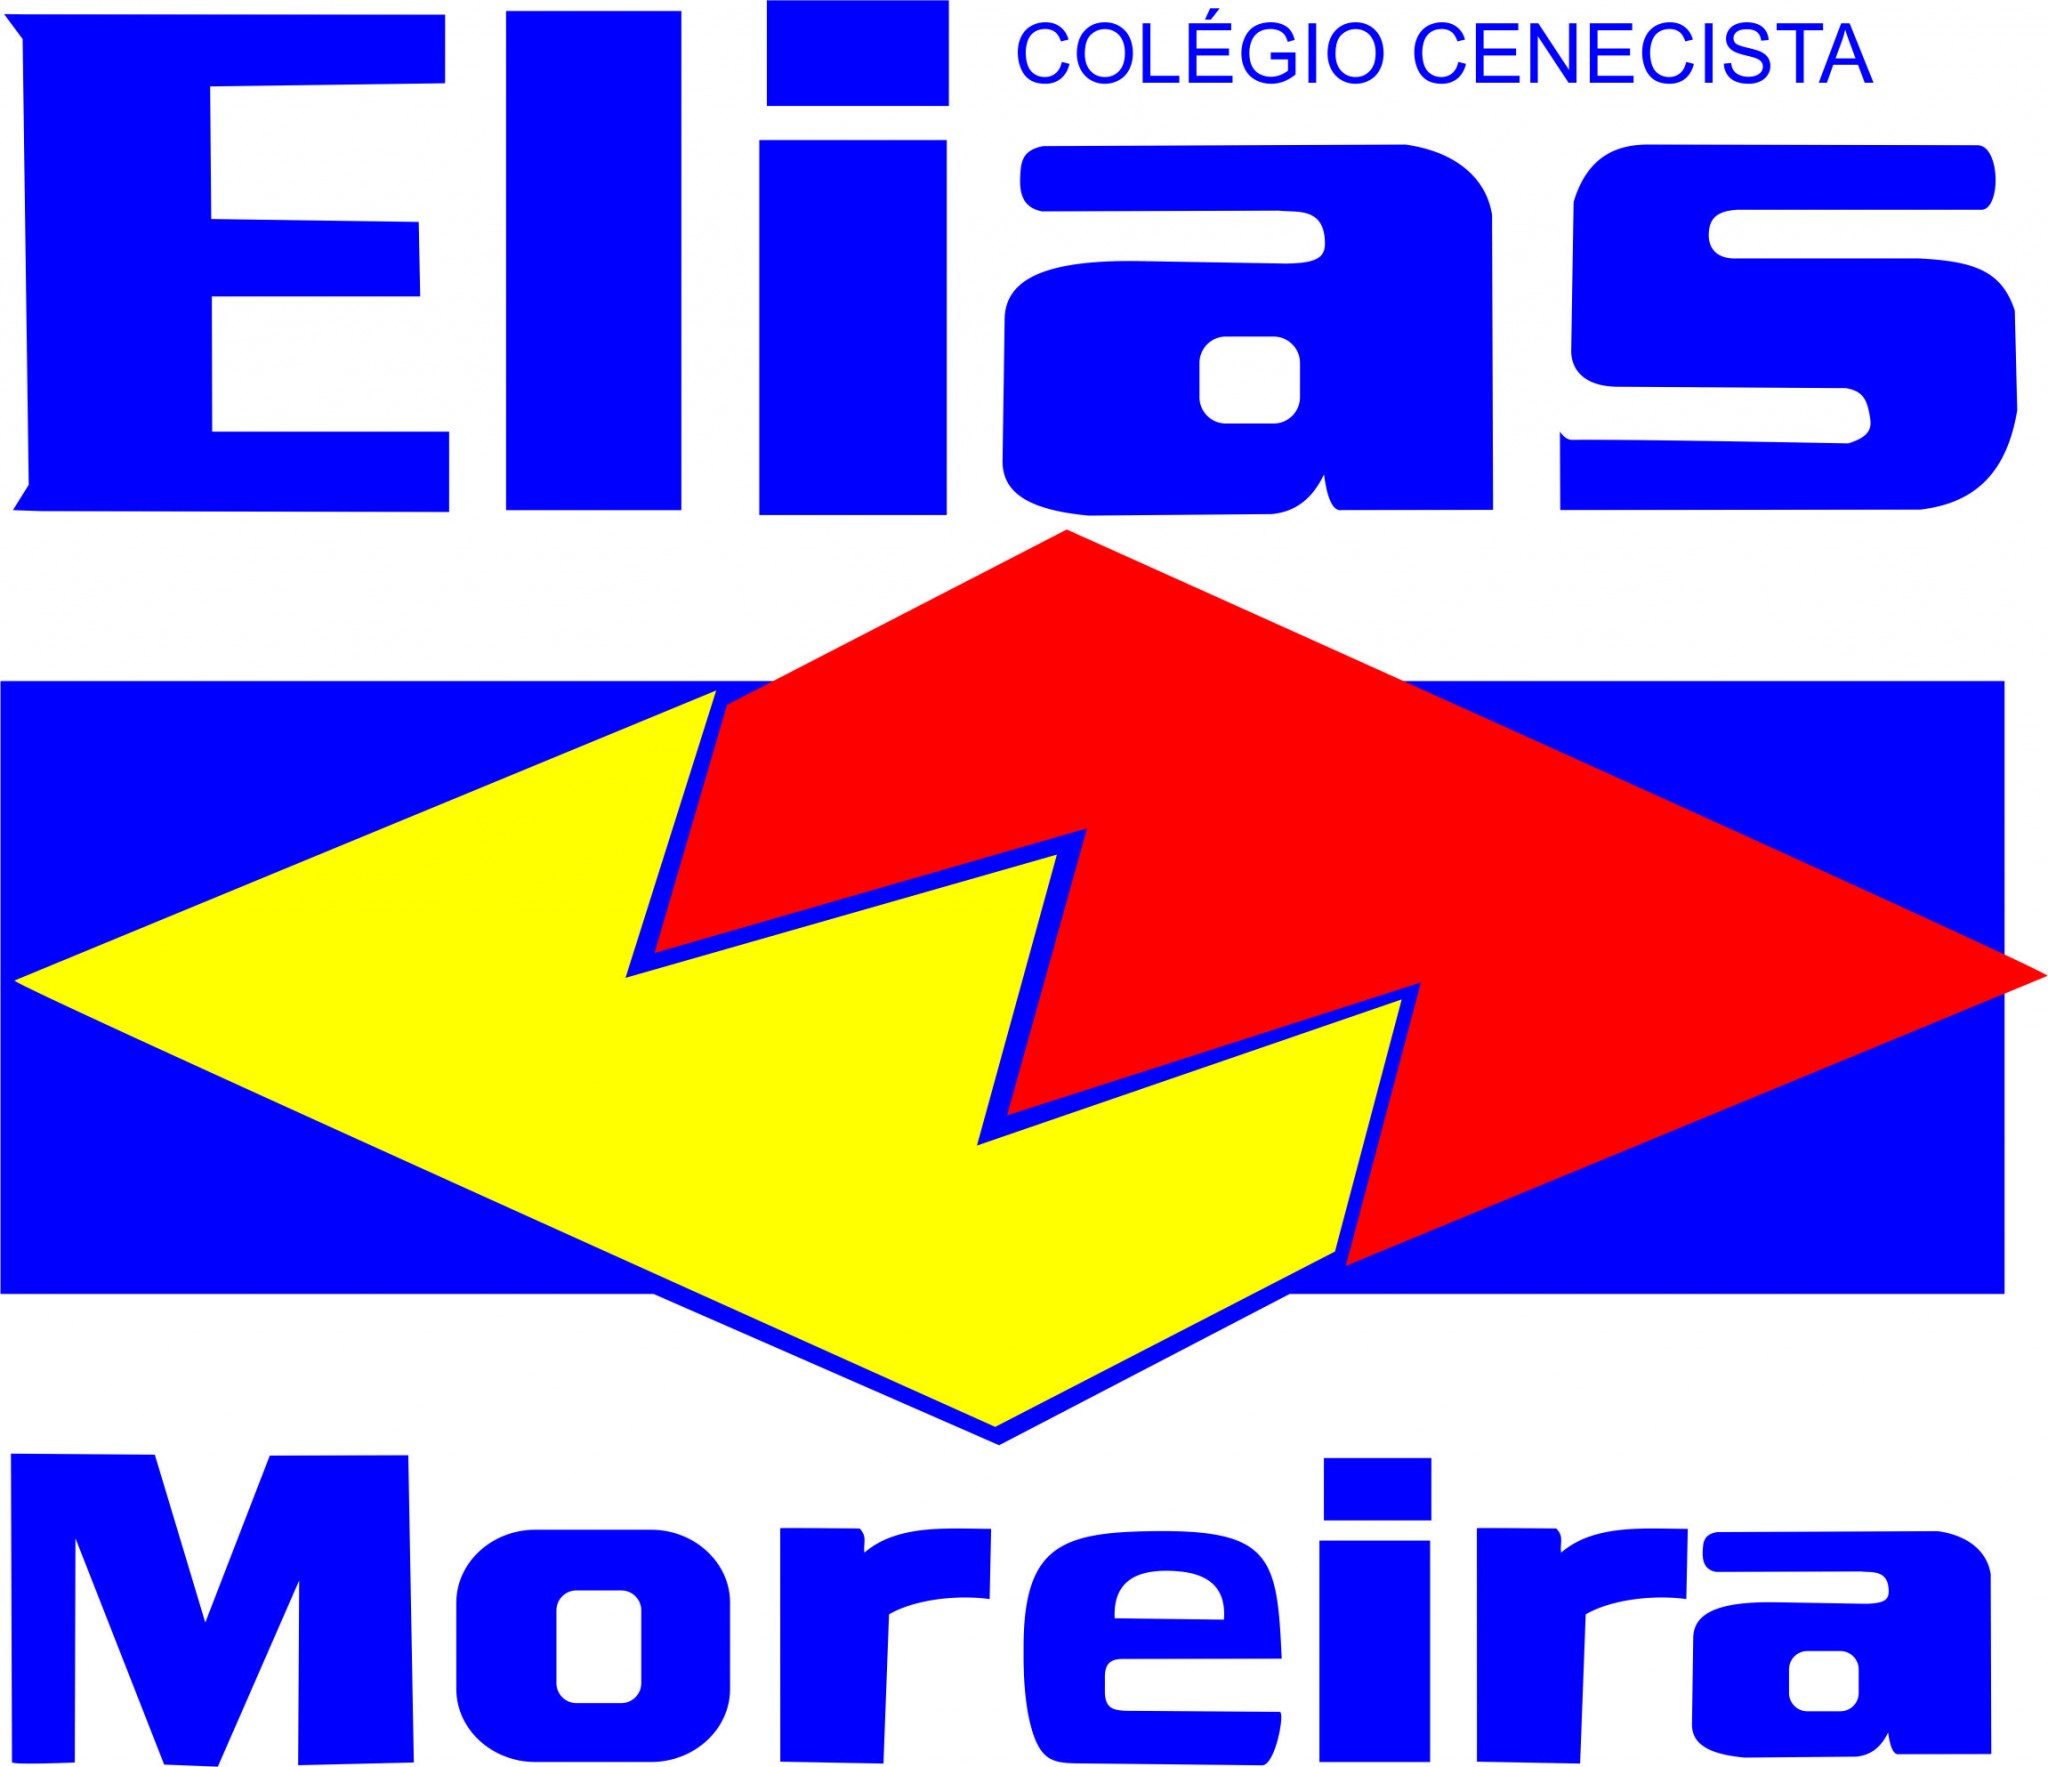 Elias Moreiro